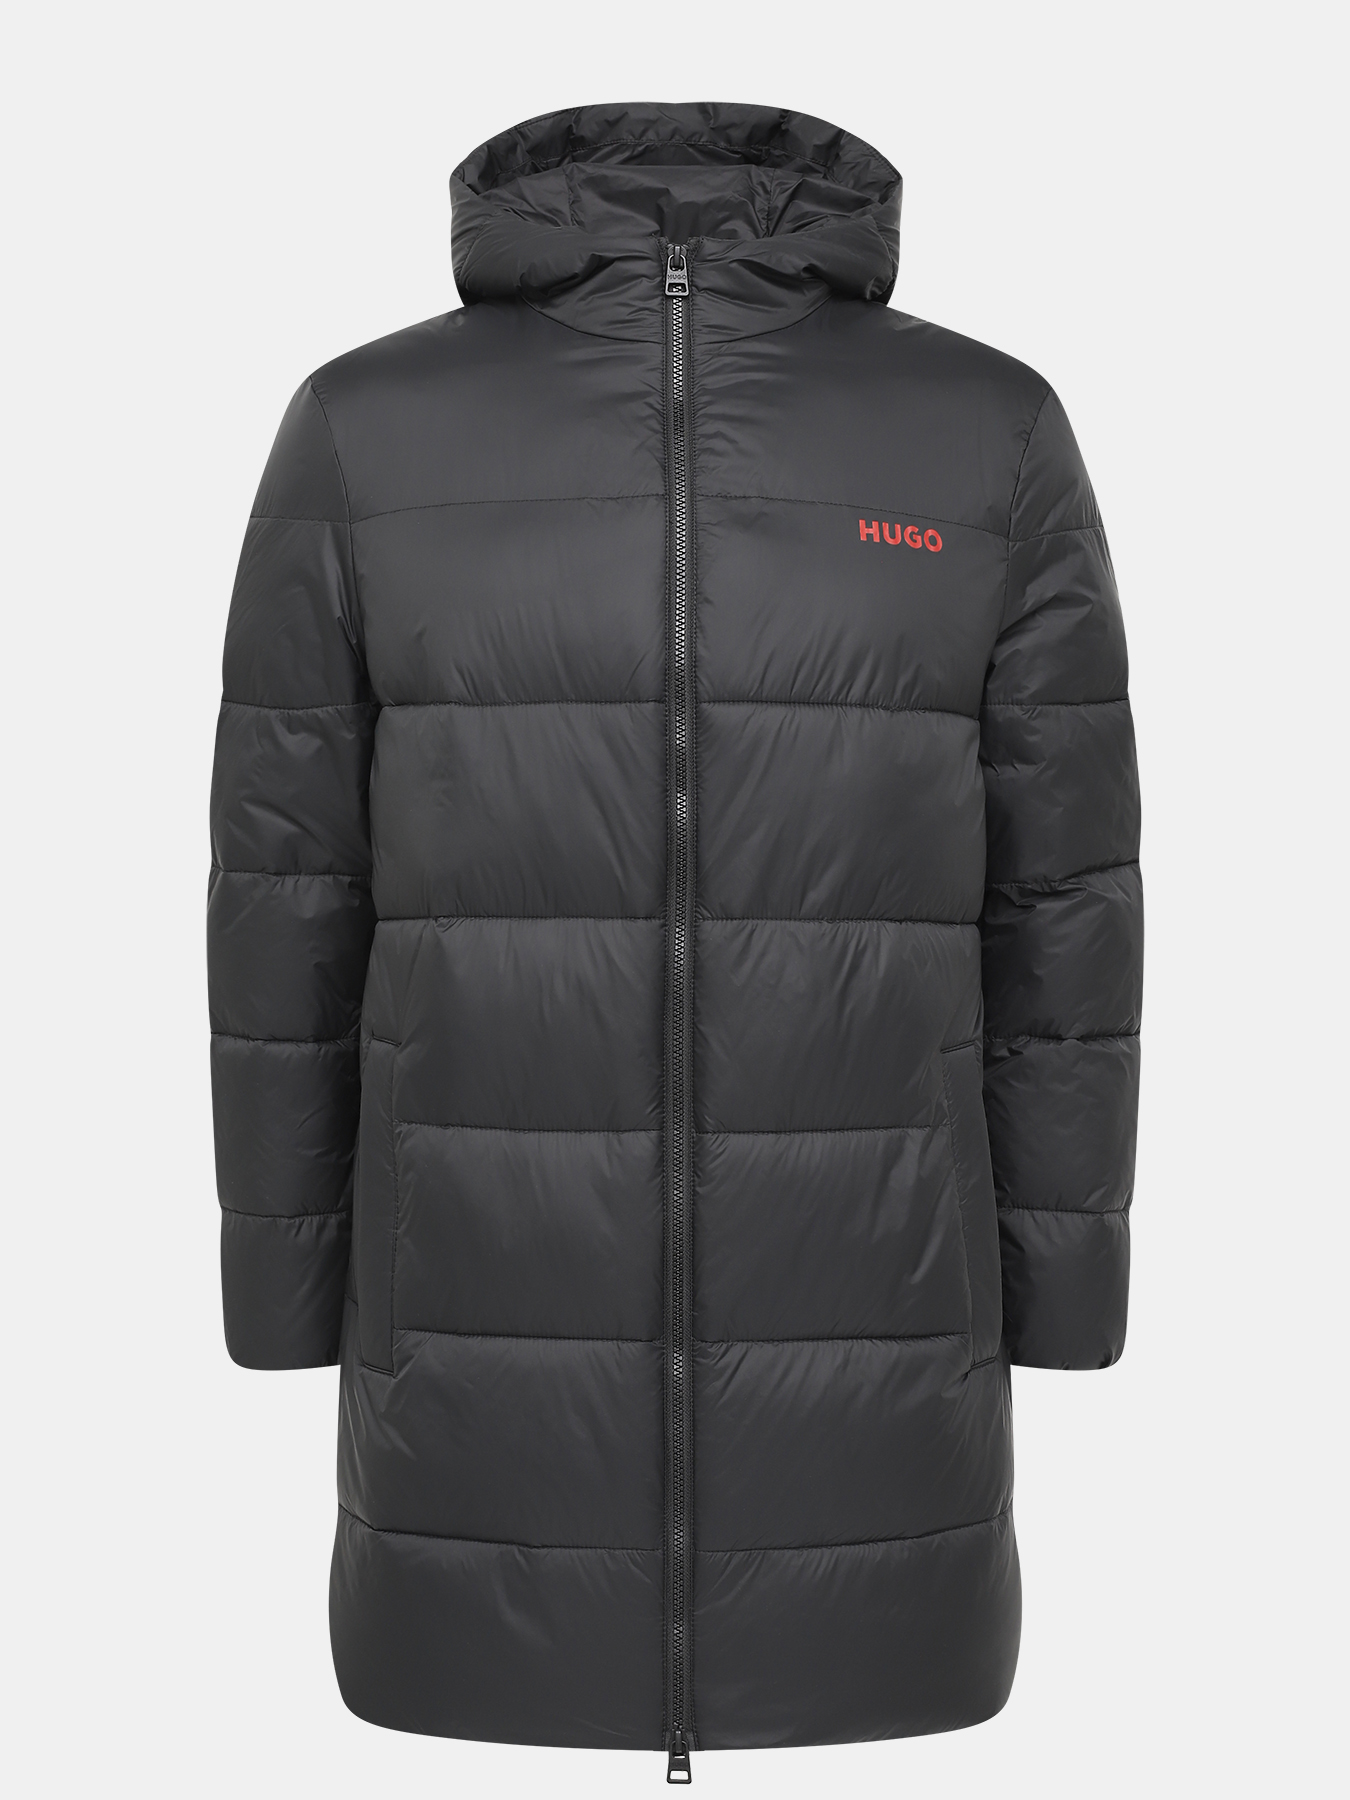 Удлиненная куртка Mati HUGO 426043-046, цвет черный, размер 54-56 - фото 1